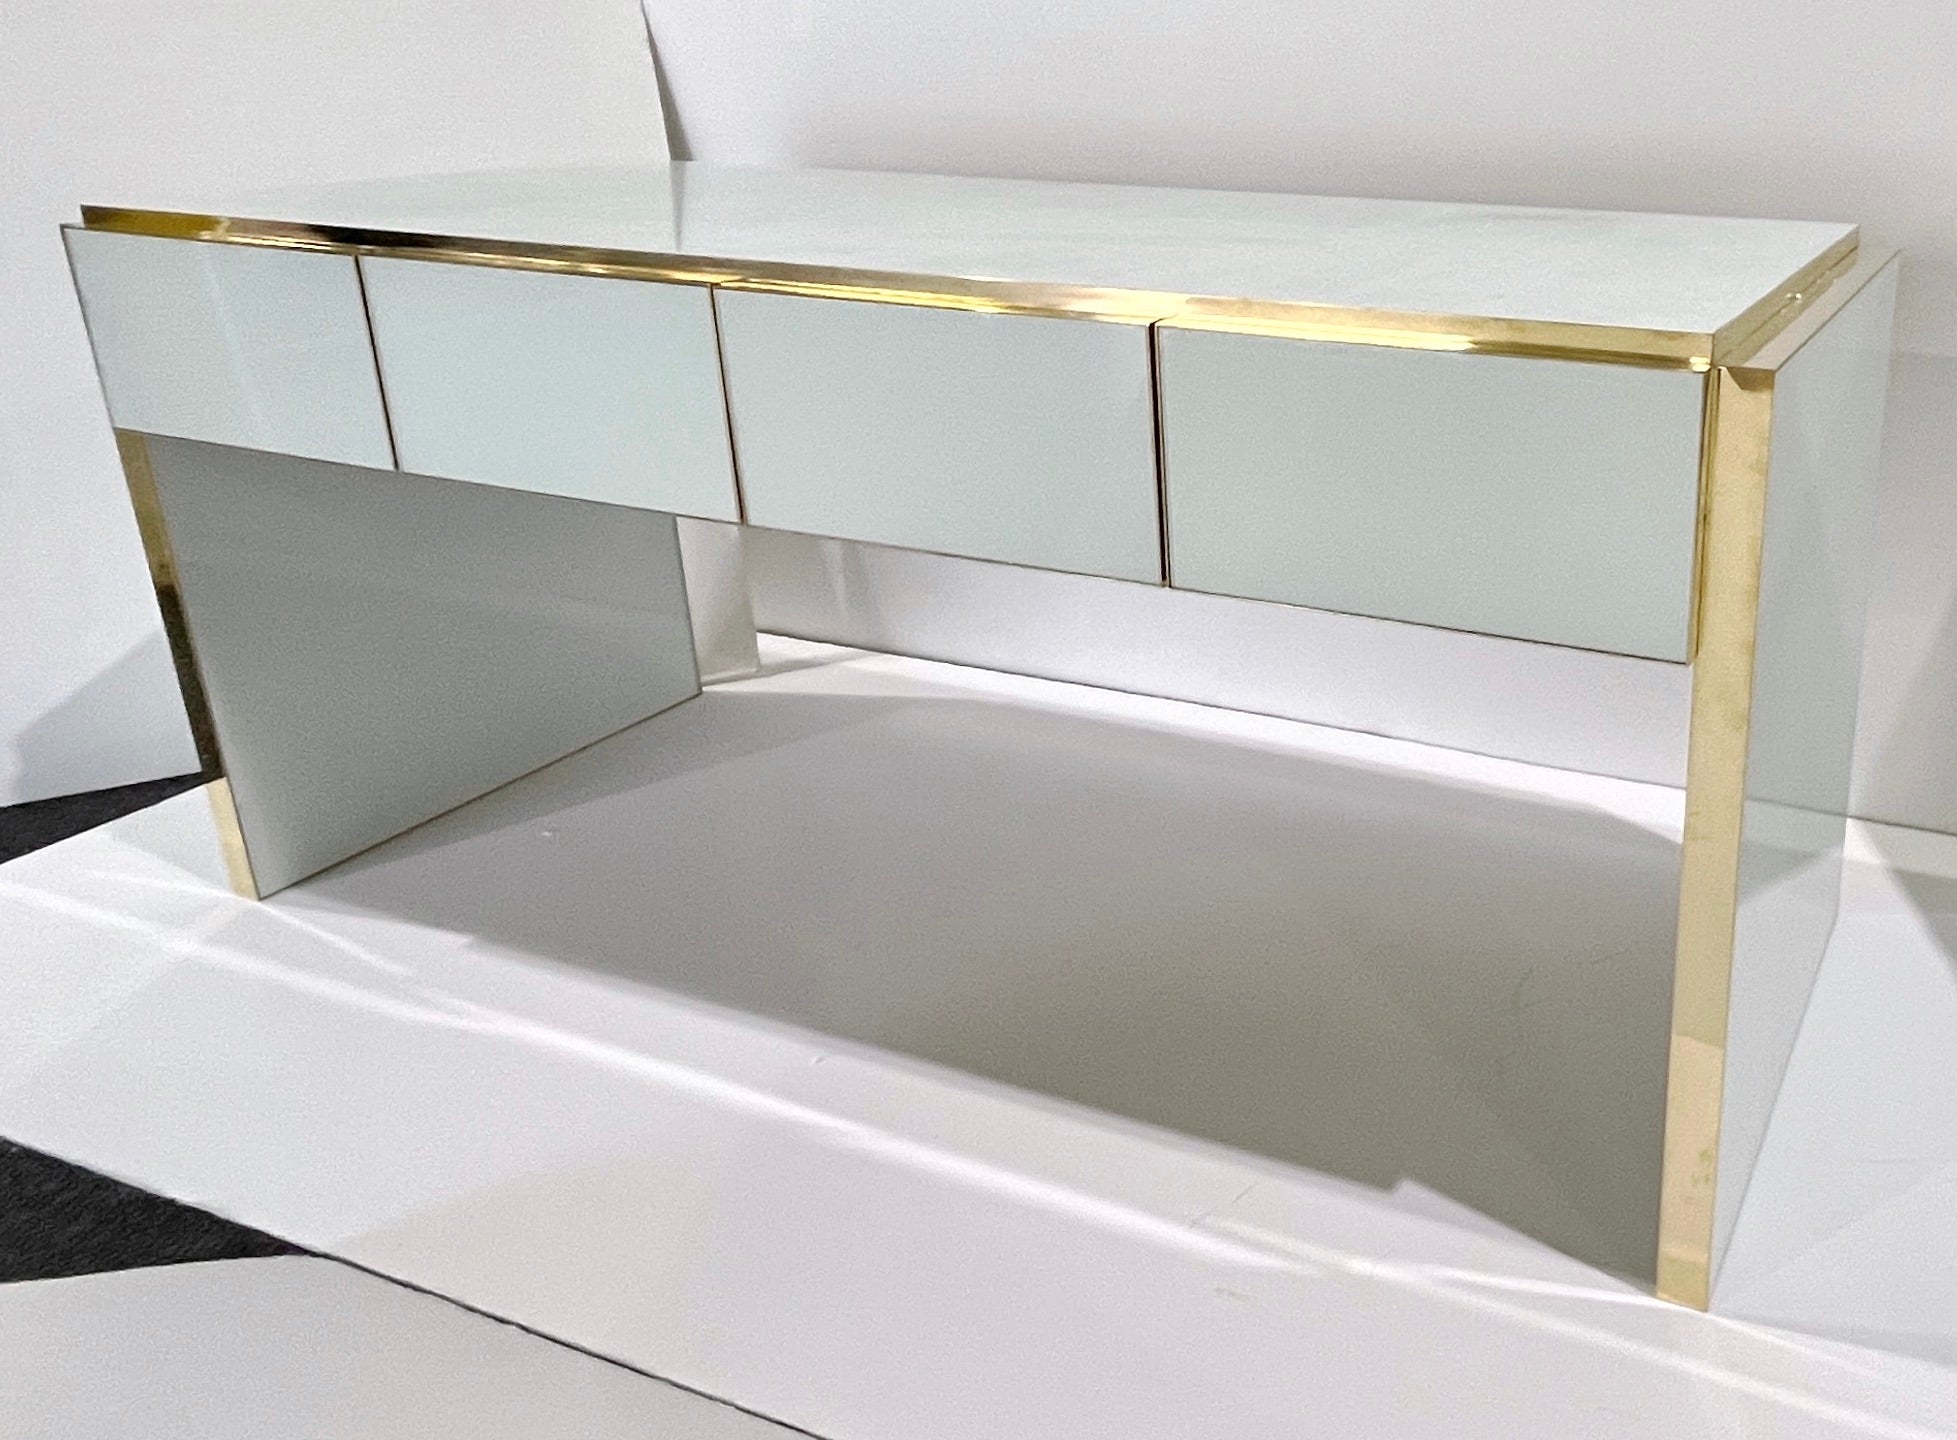 Zeitgenössische Bespoke anpassbare 4 Schubladen modernen Schreibtisch / Konsole vollständig Hand Made in Italy, mit einem minimalistischen Art Deco Design, das Surround mit Kunstglas in einem auffallenden minimalistischen weißen Farbe dekoriert.